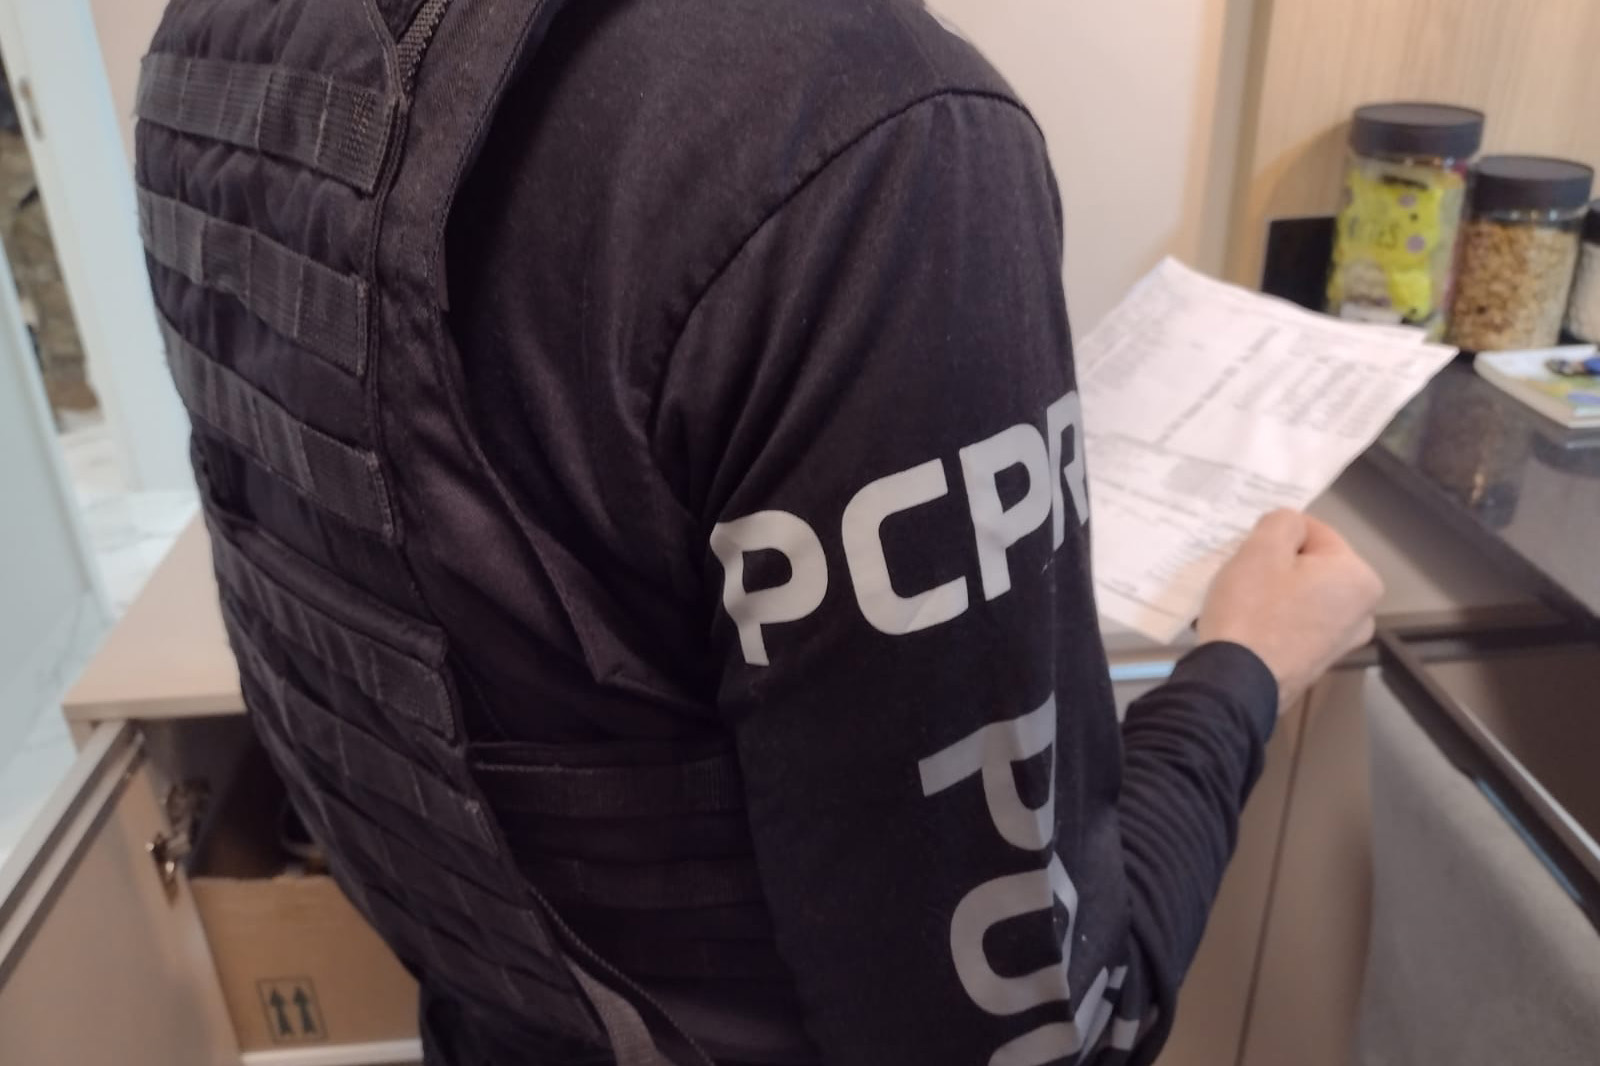 PCPR prende integrantes de organização ligada ao tráfico e lavagem de dinheiro Foto: PCPR